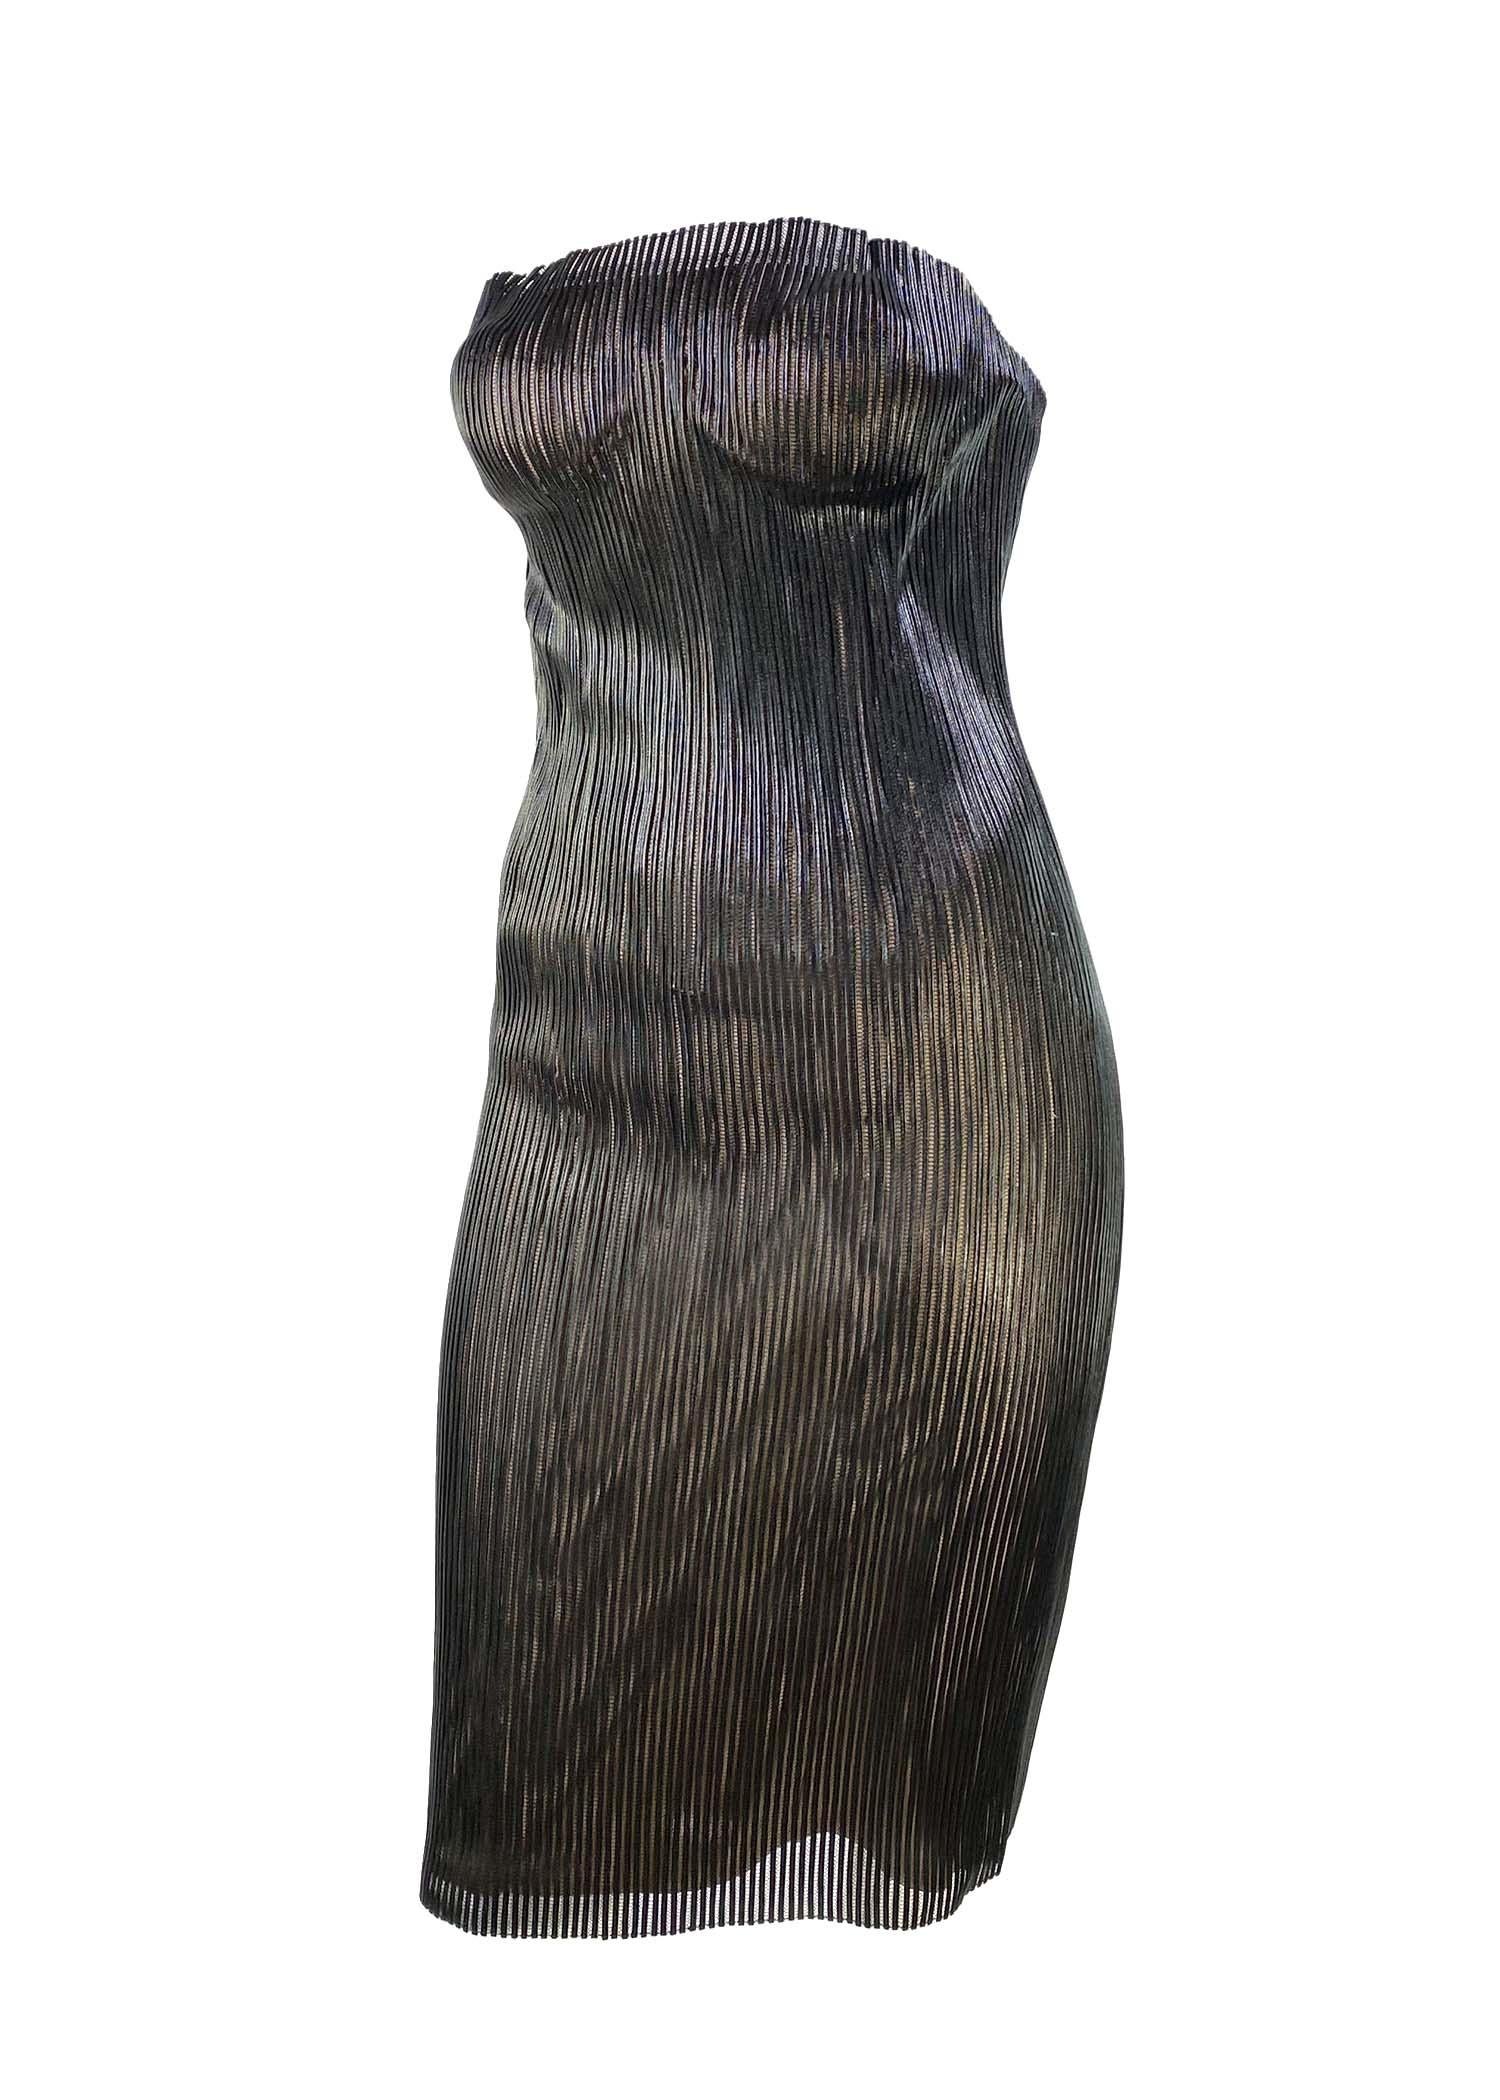 Présentation d'une robe tube Gucci en cuir et maille, conçue par Tom Ford. Cette robe emblématique a fait ses débuts sur le défilé printemps/été 2001 dans le look 48, porté par Kate Moss. Comme on peut le voir dans la campagne publicitaire de la